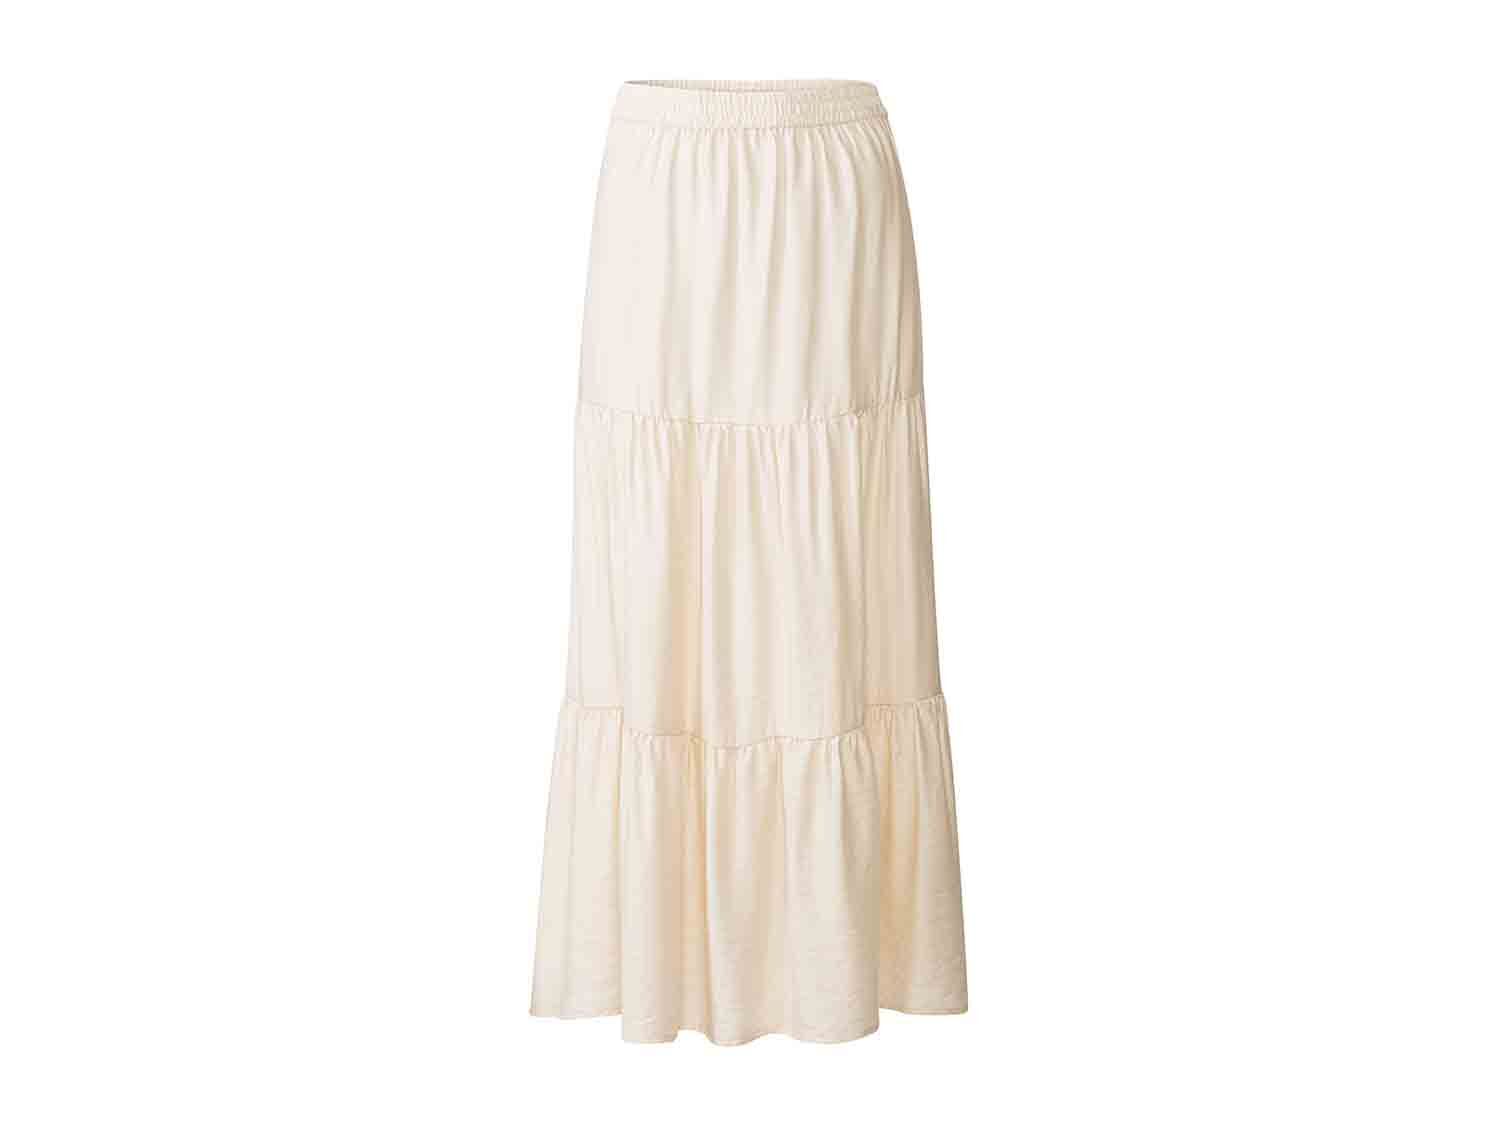 Long white skirt for women, from Lidl